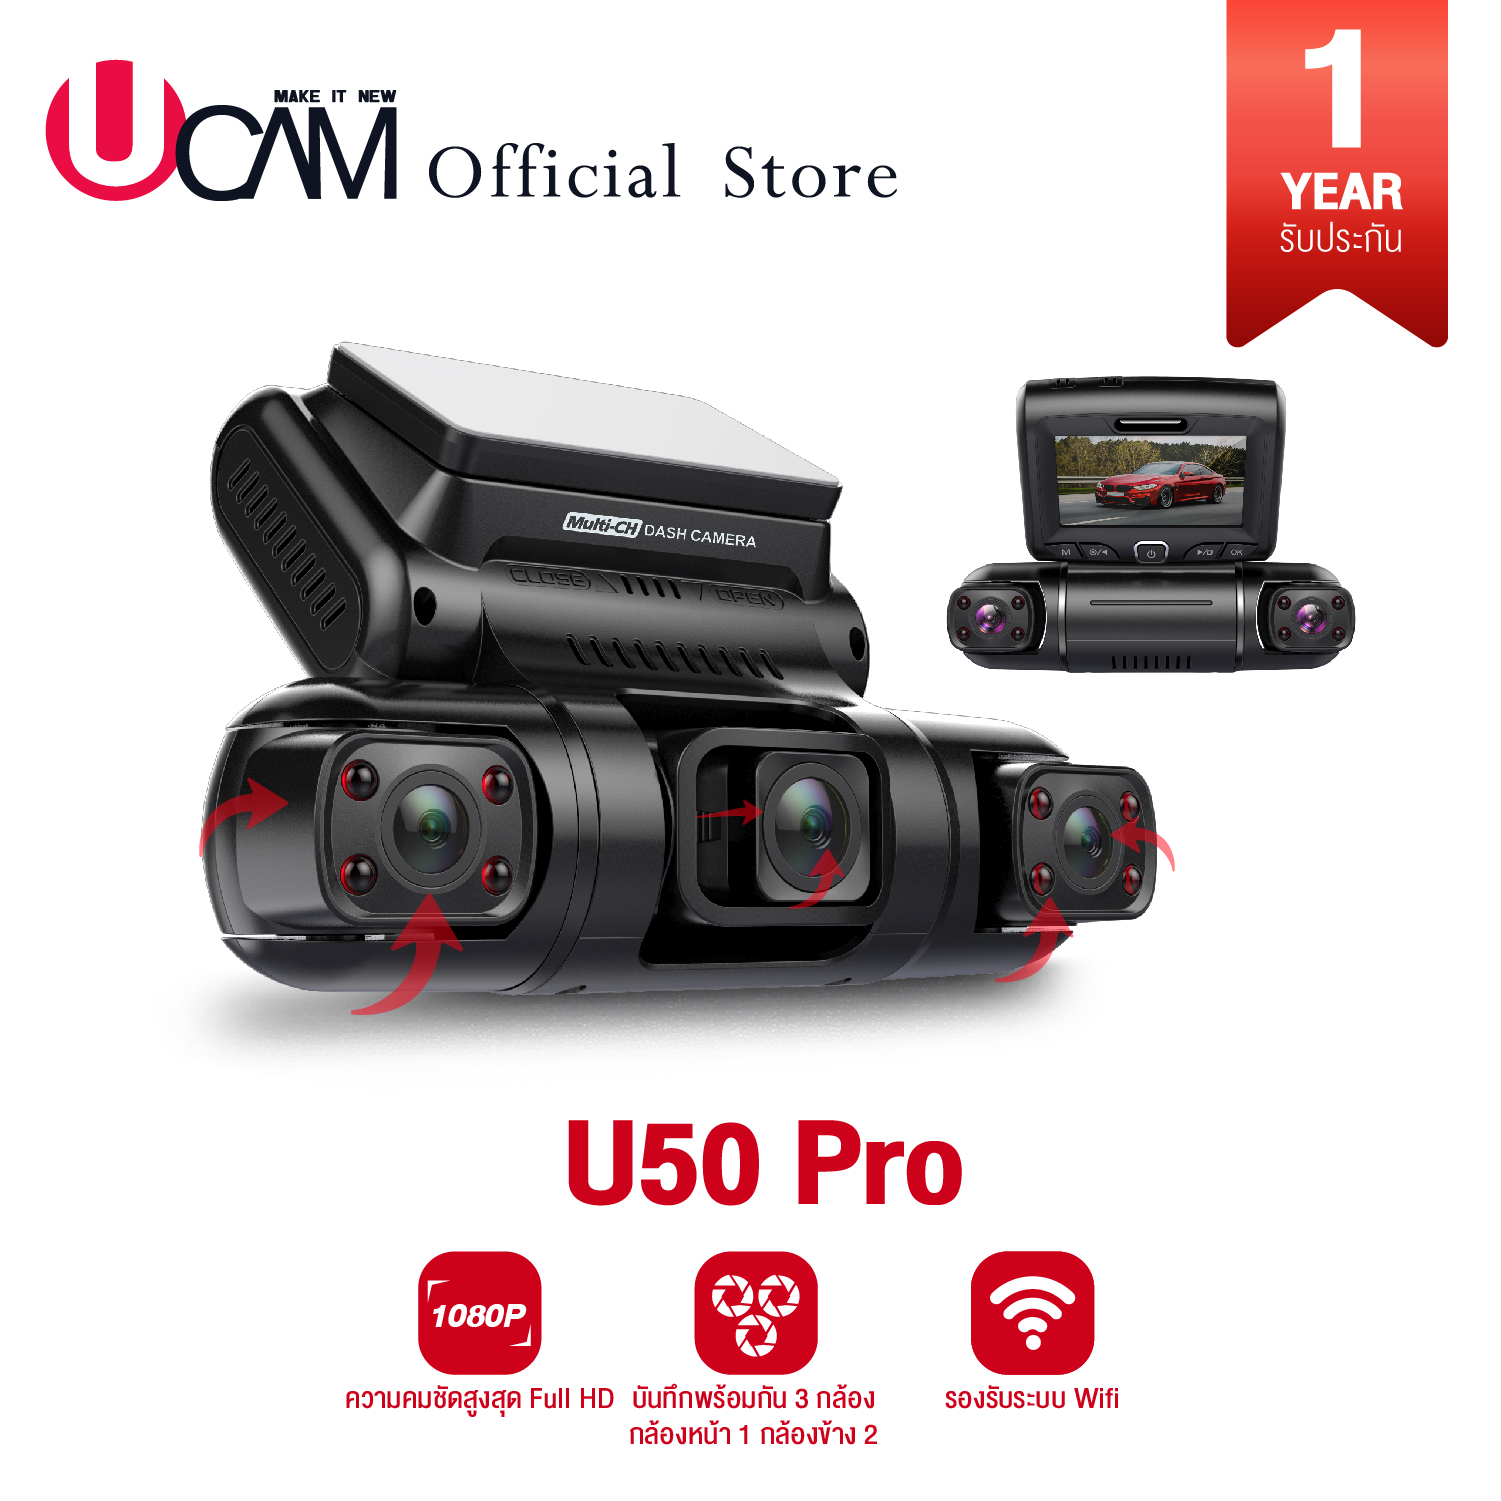 UCAM กล้องติดรถยนต์ รุ่น U50pro 3 กล้อง ด้านหน้าและในรถ2กล้อง มีwifi ดูผ่านแอ้พ